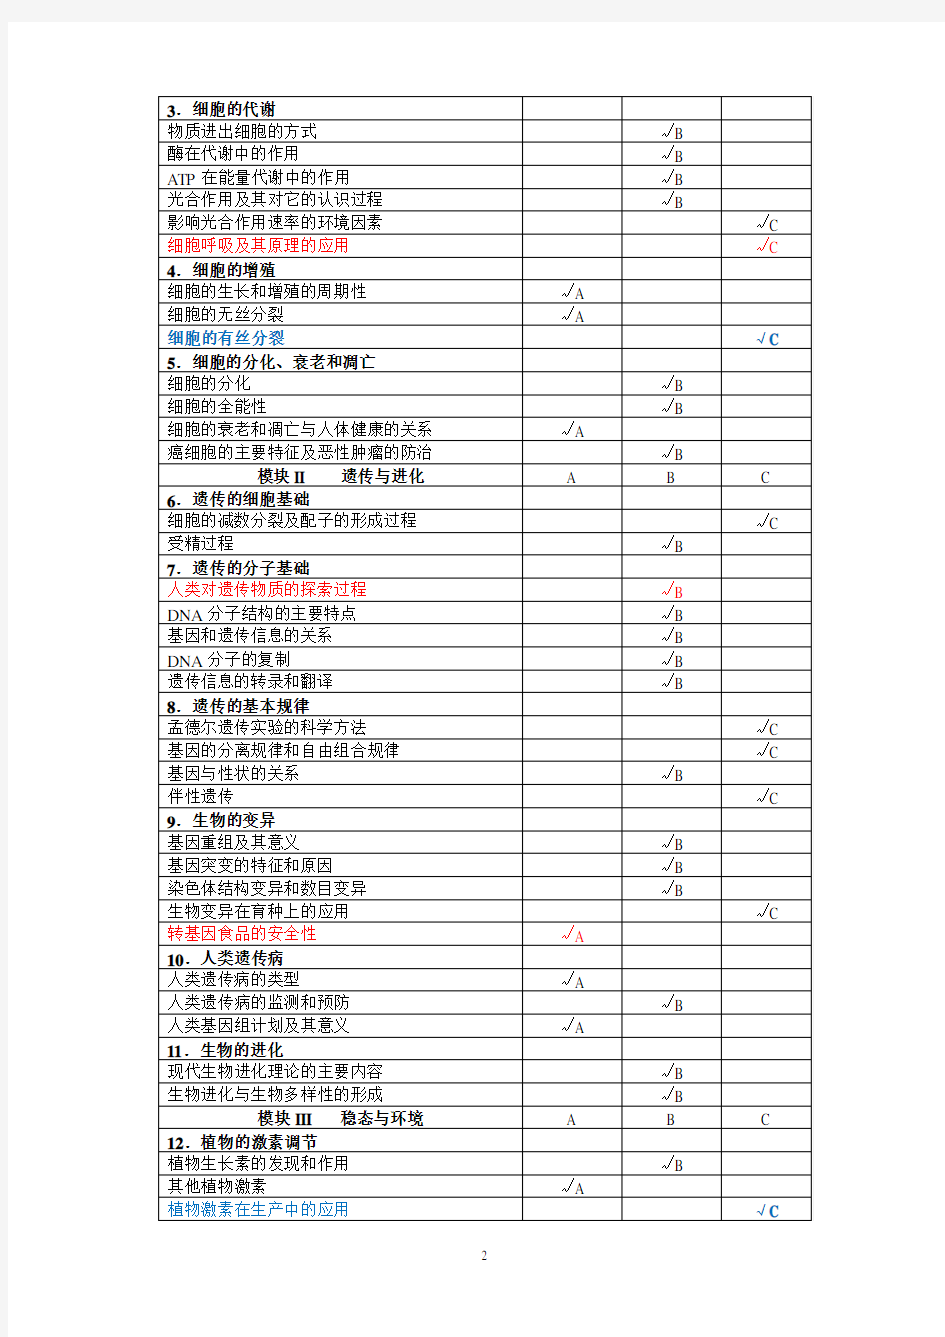 (完整版)2019年江苏省高考生物考试说明